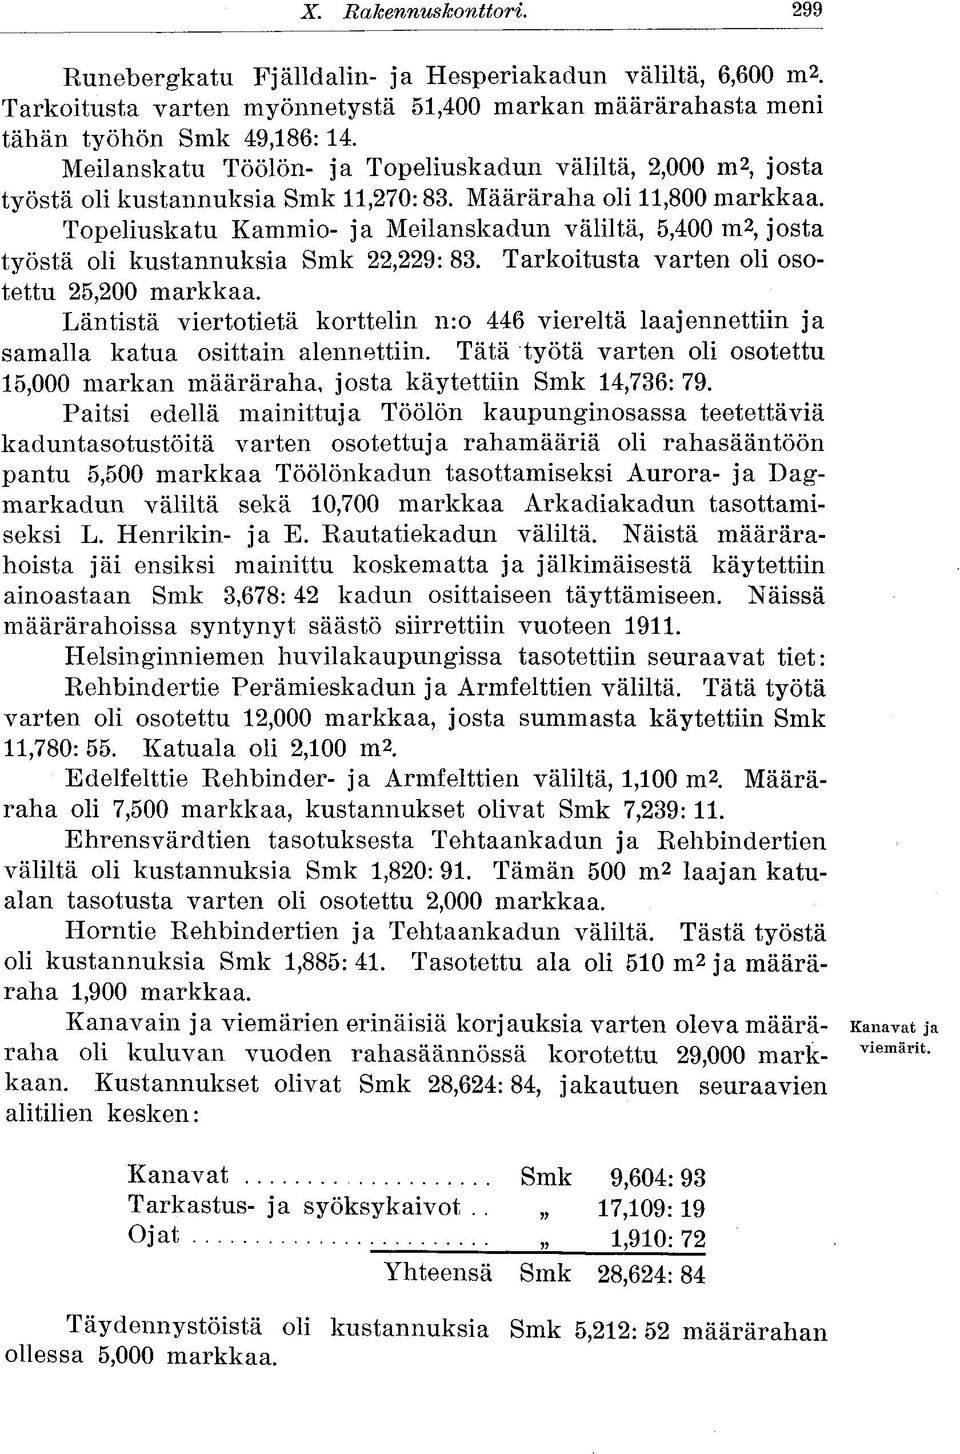 Topeliuskatu Kammio- ja Meilanskadun väliltä, 5,400 m 2, josta työstä oli kustannuksia Smk 22,229: 83. Tarkoitusta varten oli osotettu 25,200 markkaa.